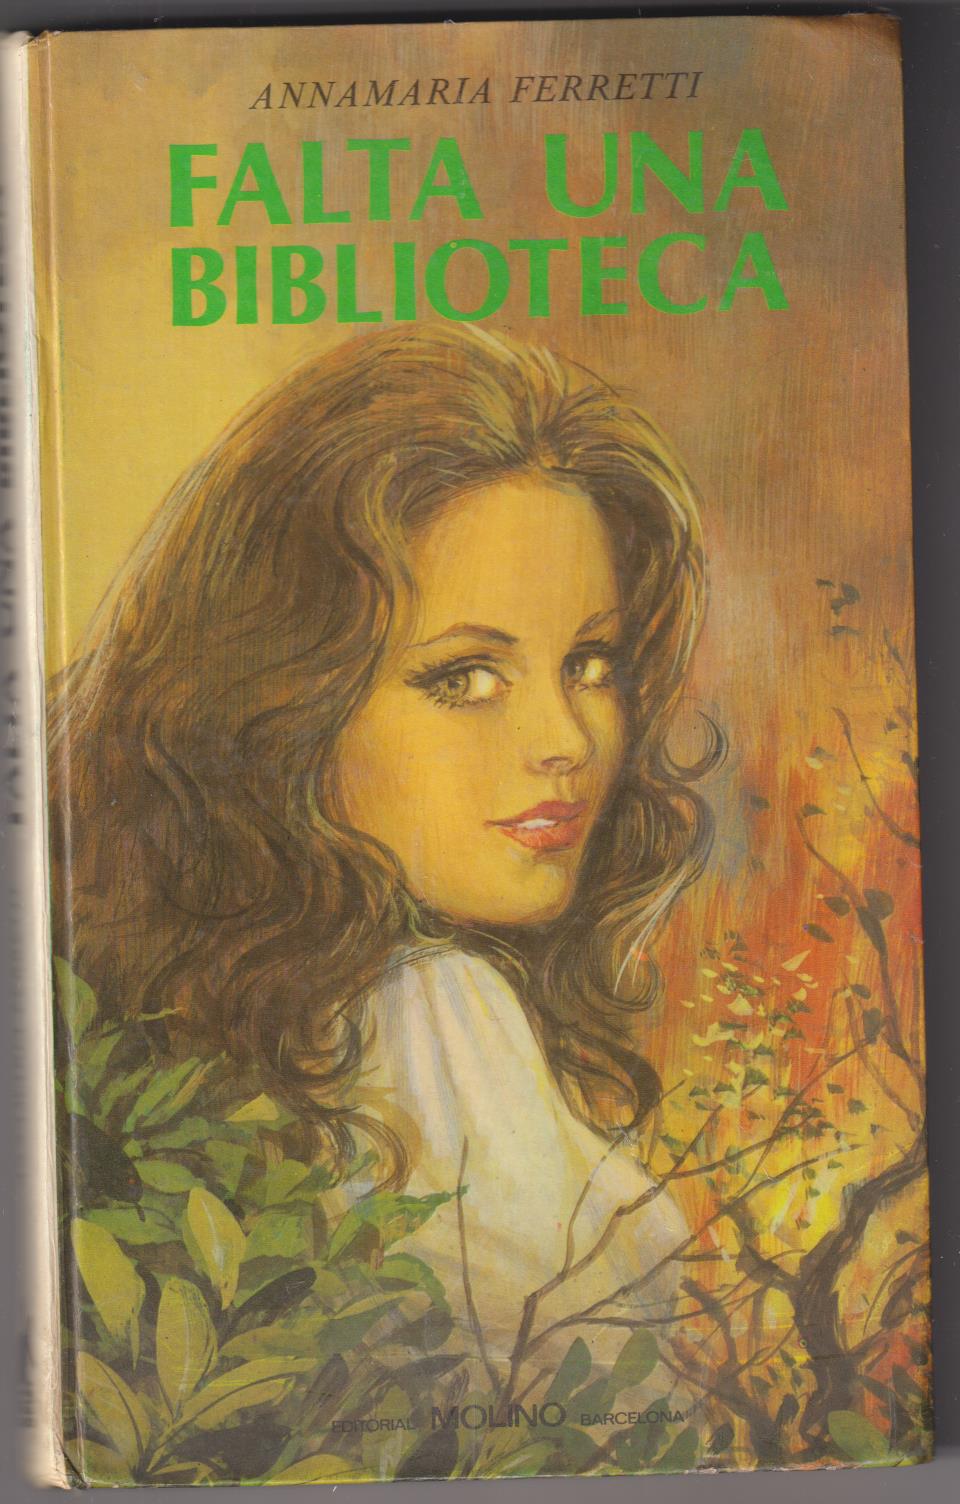 Anna María Ferretti. Falta una biblioteca. Editorial Molino 1975